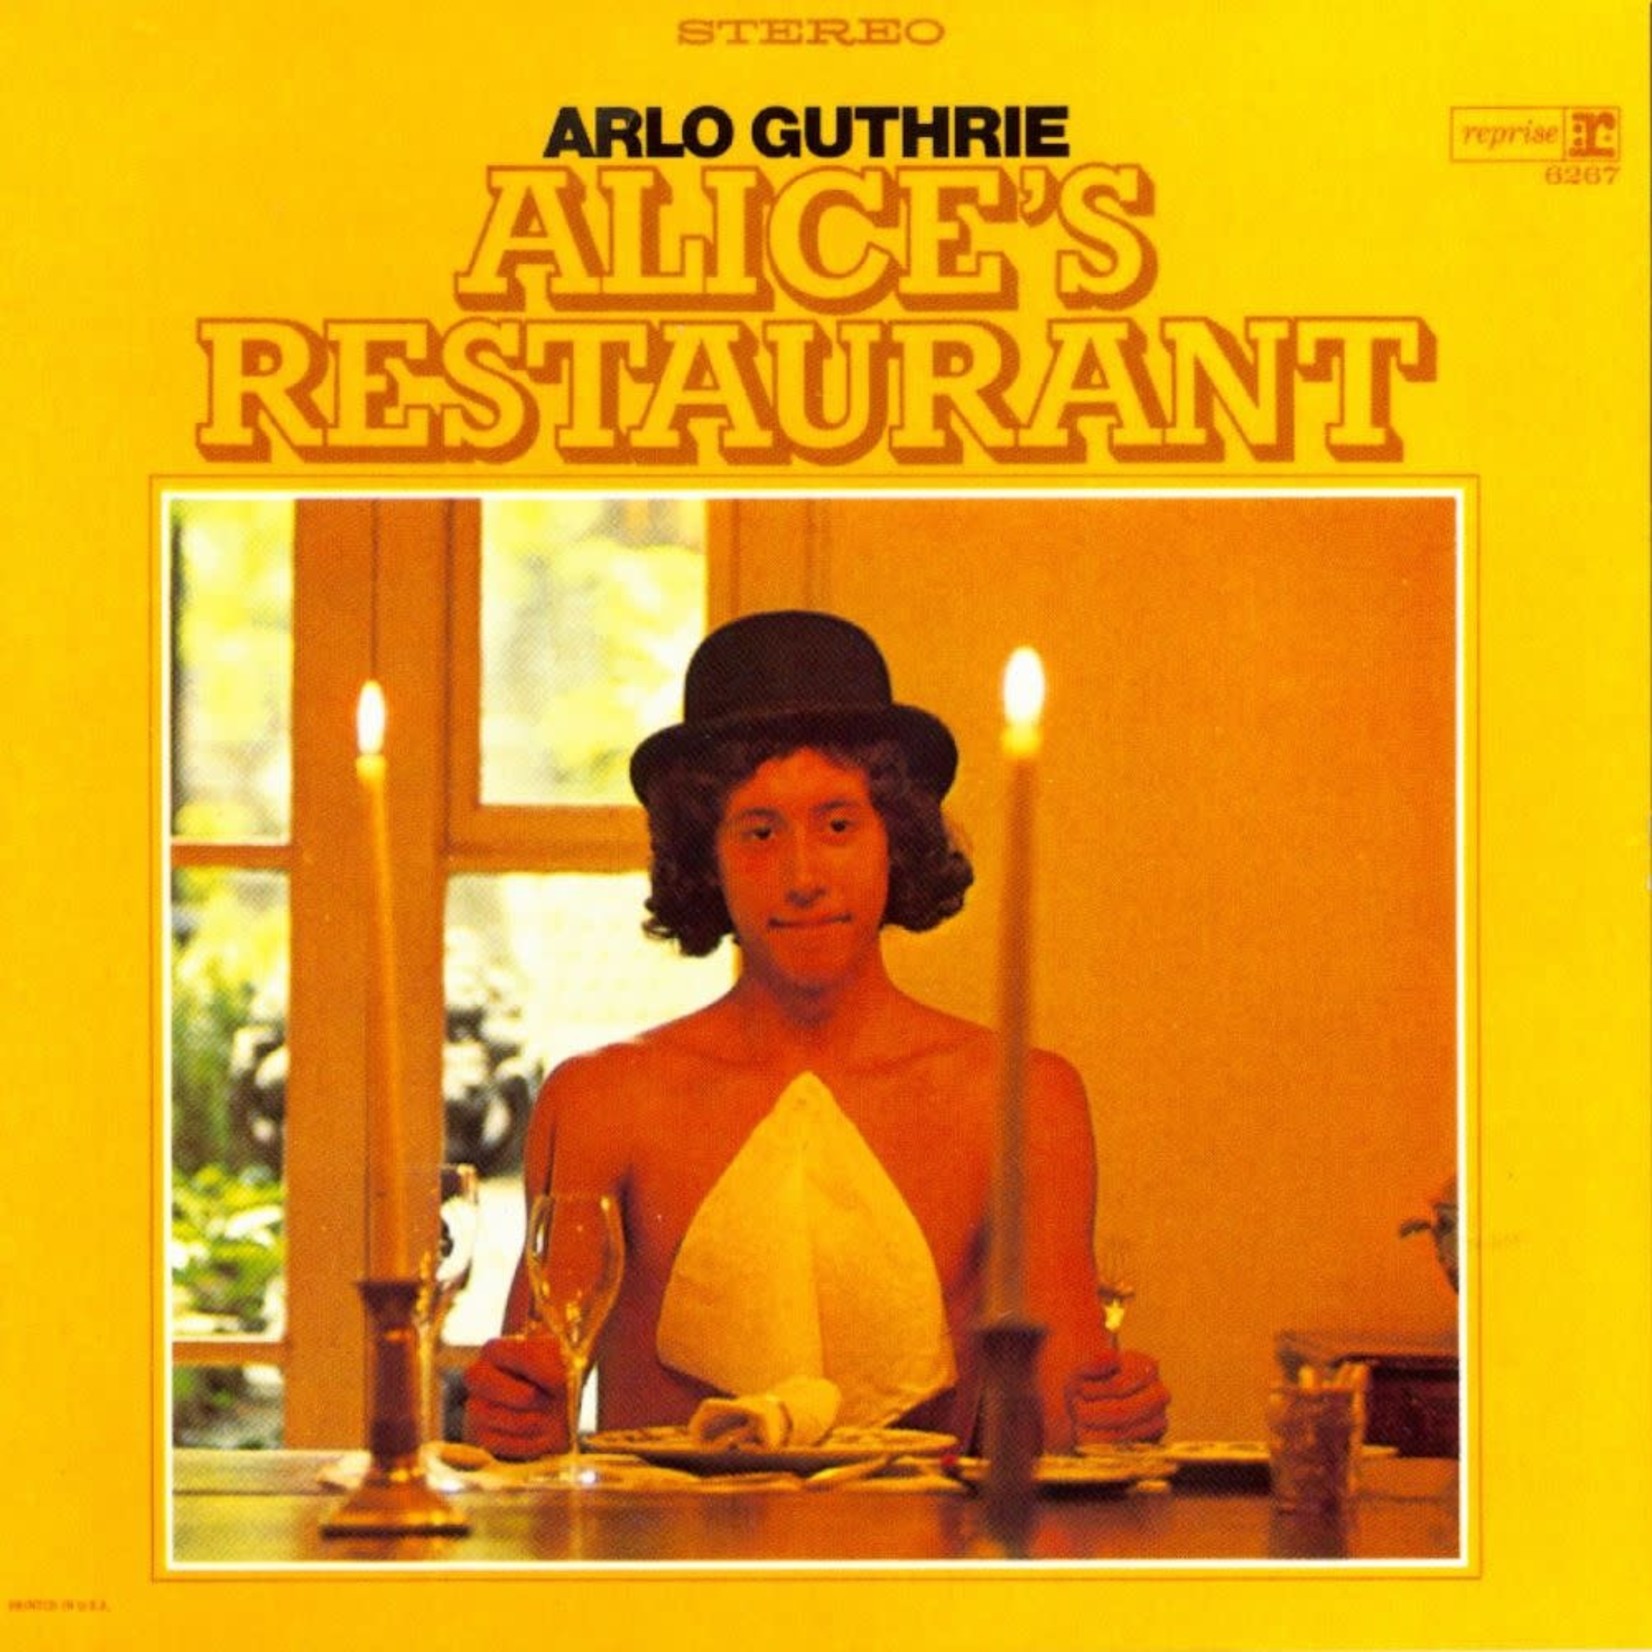 [Vintage] Arlo Guthrie - Alice's Restaurant